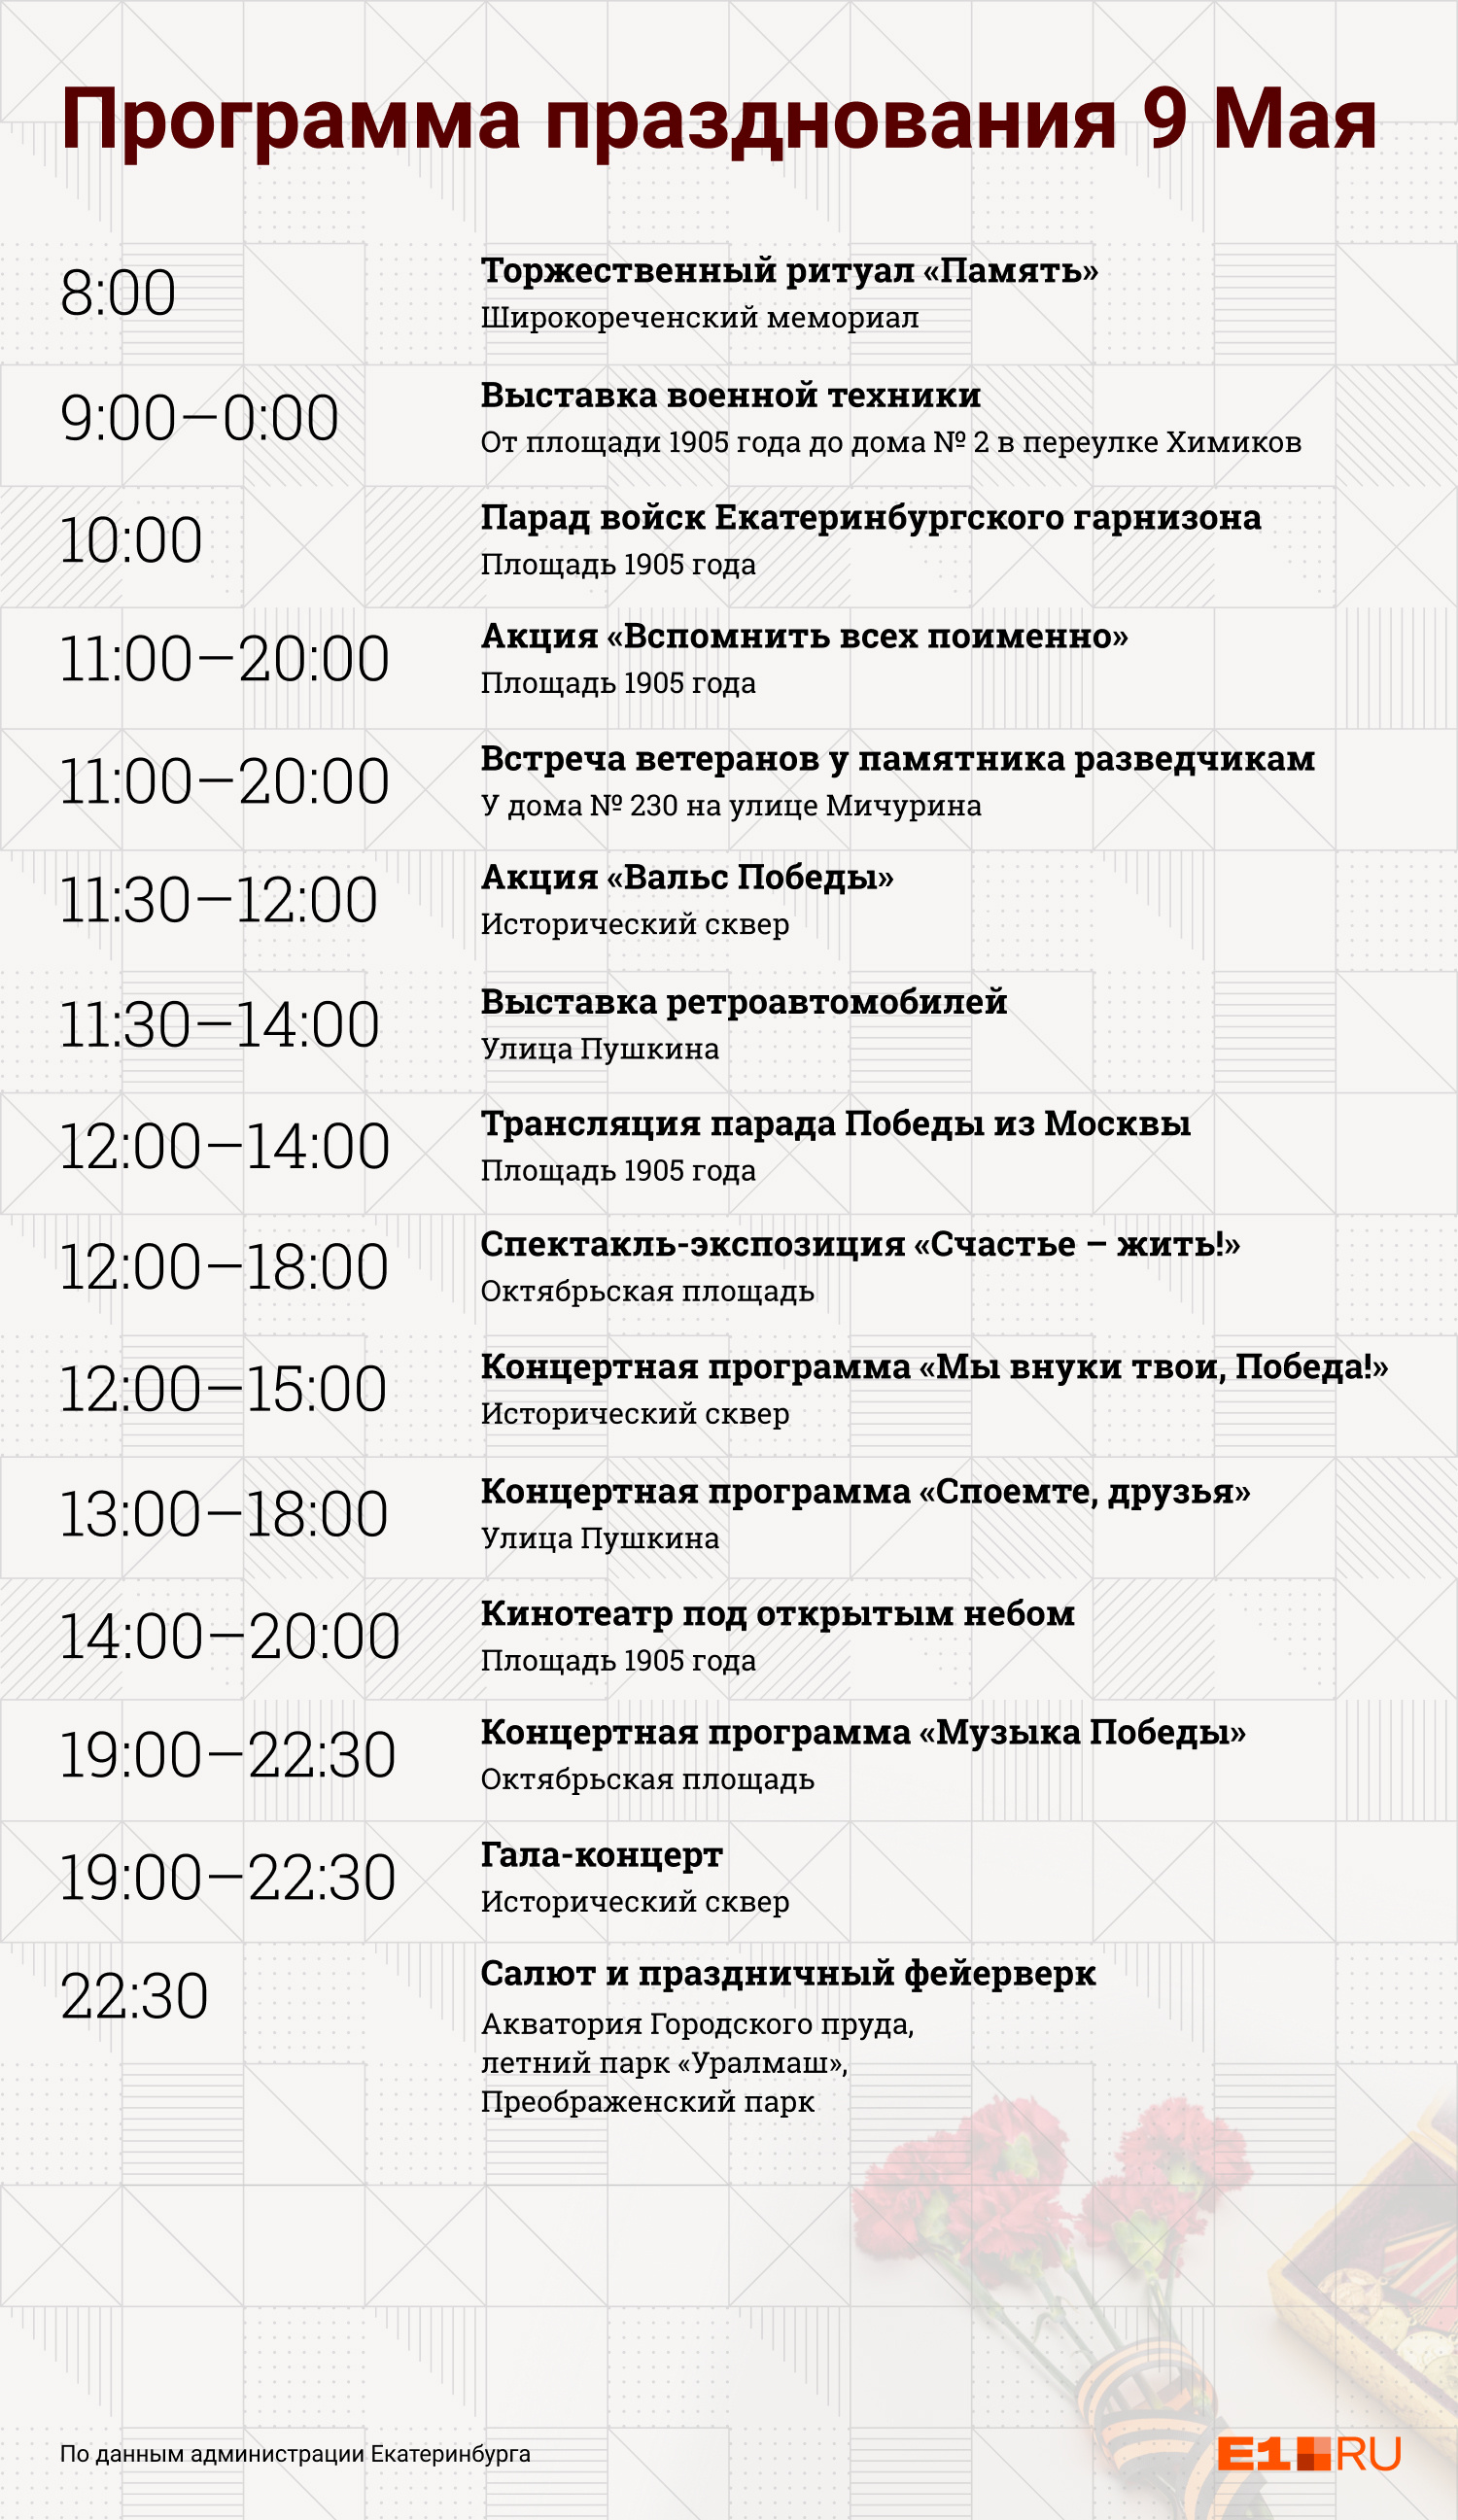 Празднование Дня Победы в Екатеринбурге будет длиться с утра до вечера